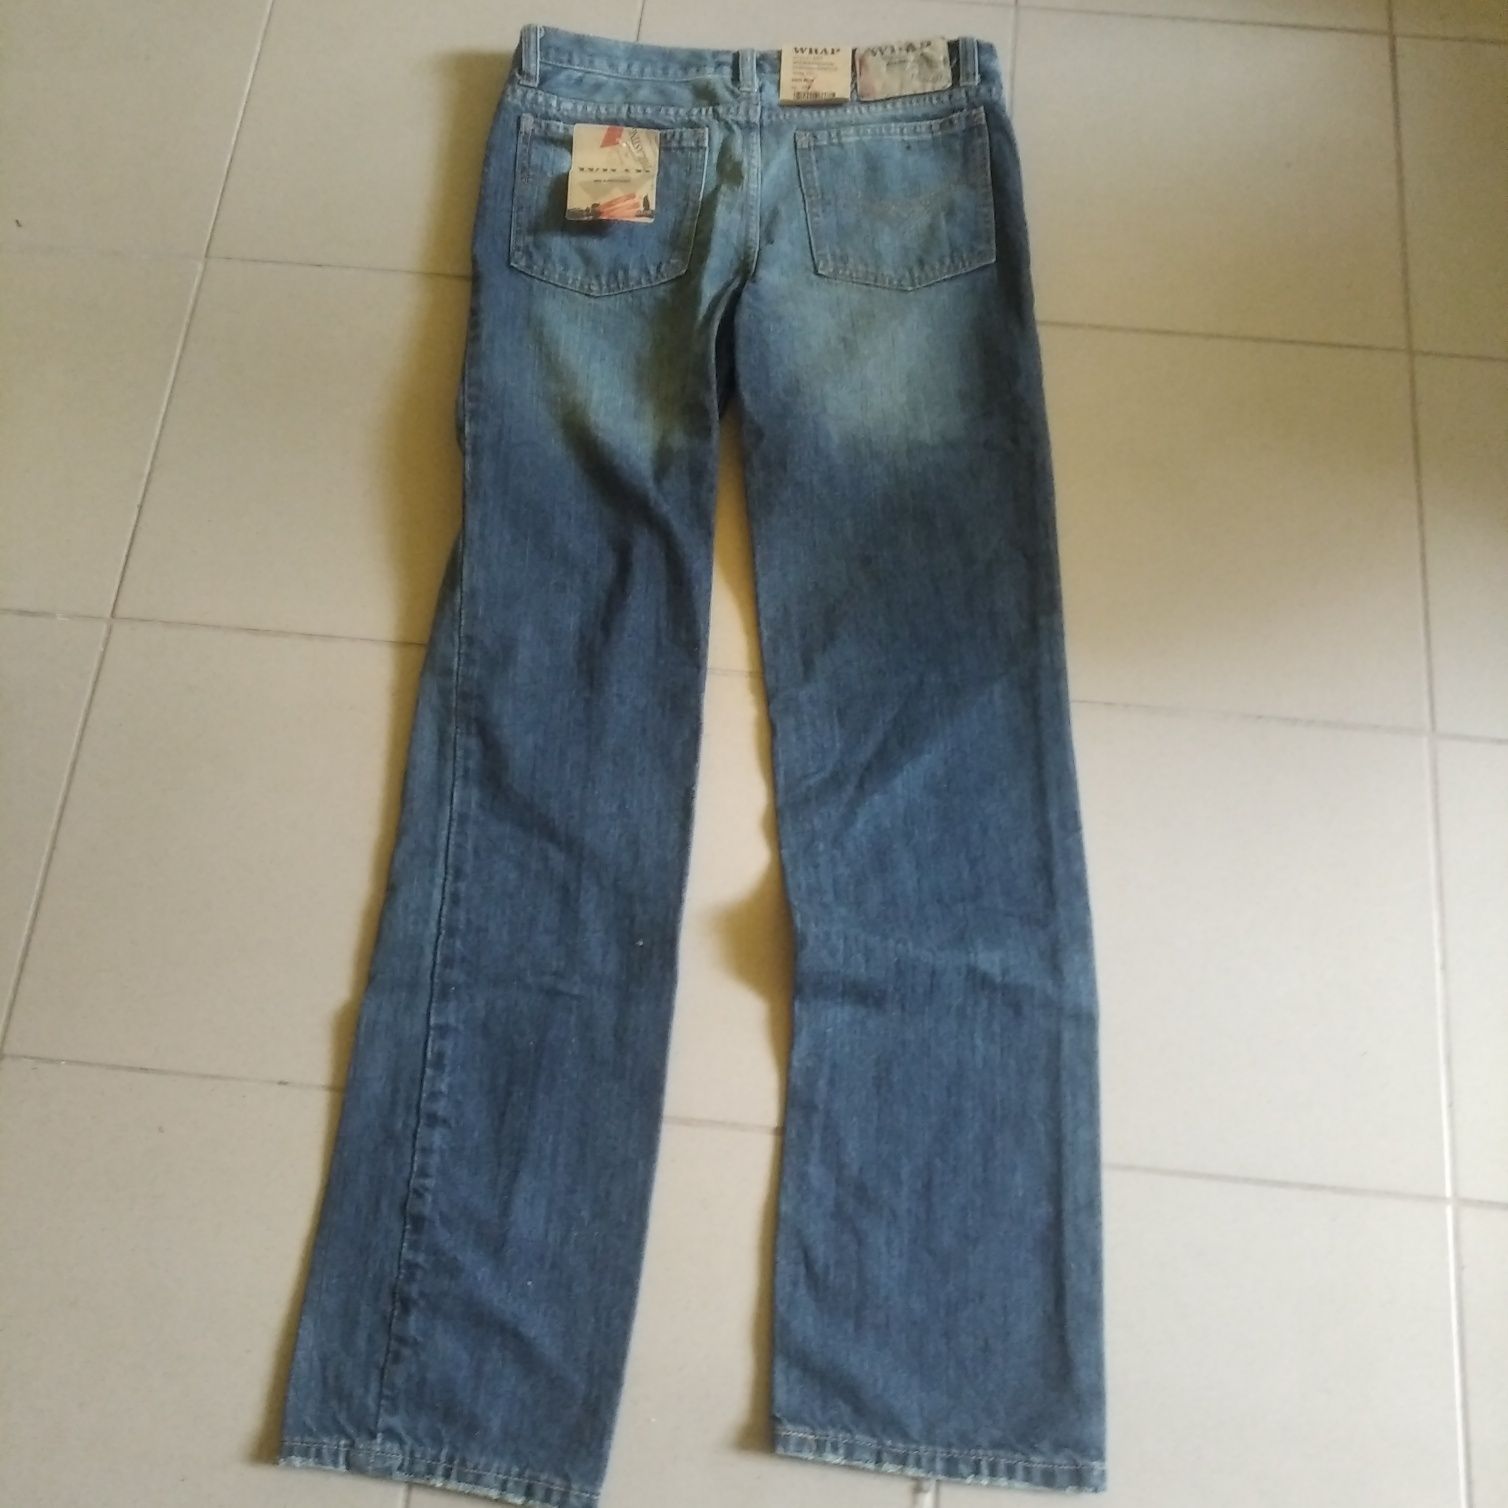 Spodnie męskie jeansy na 176 cm